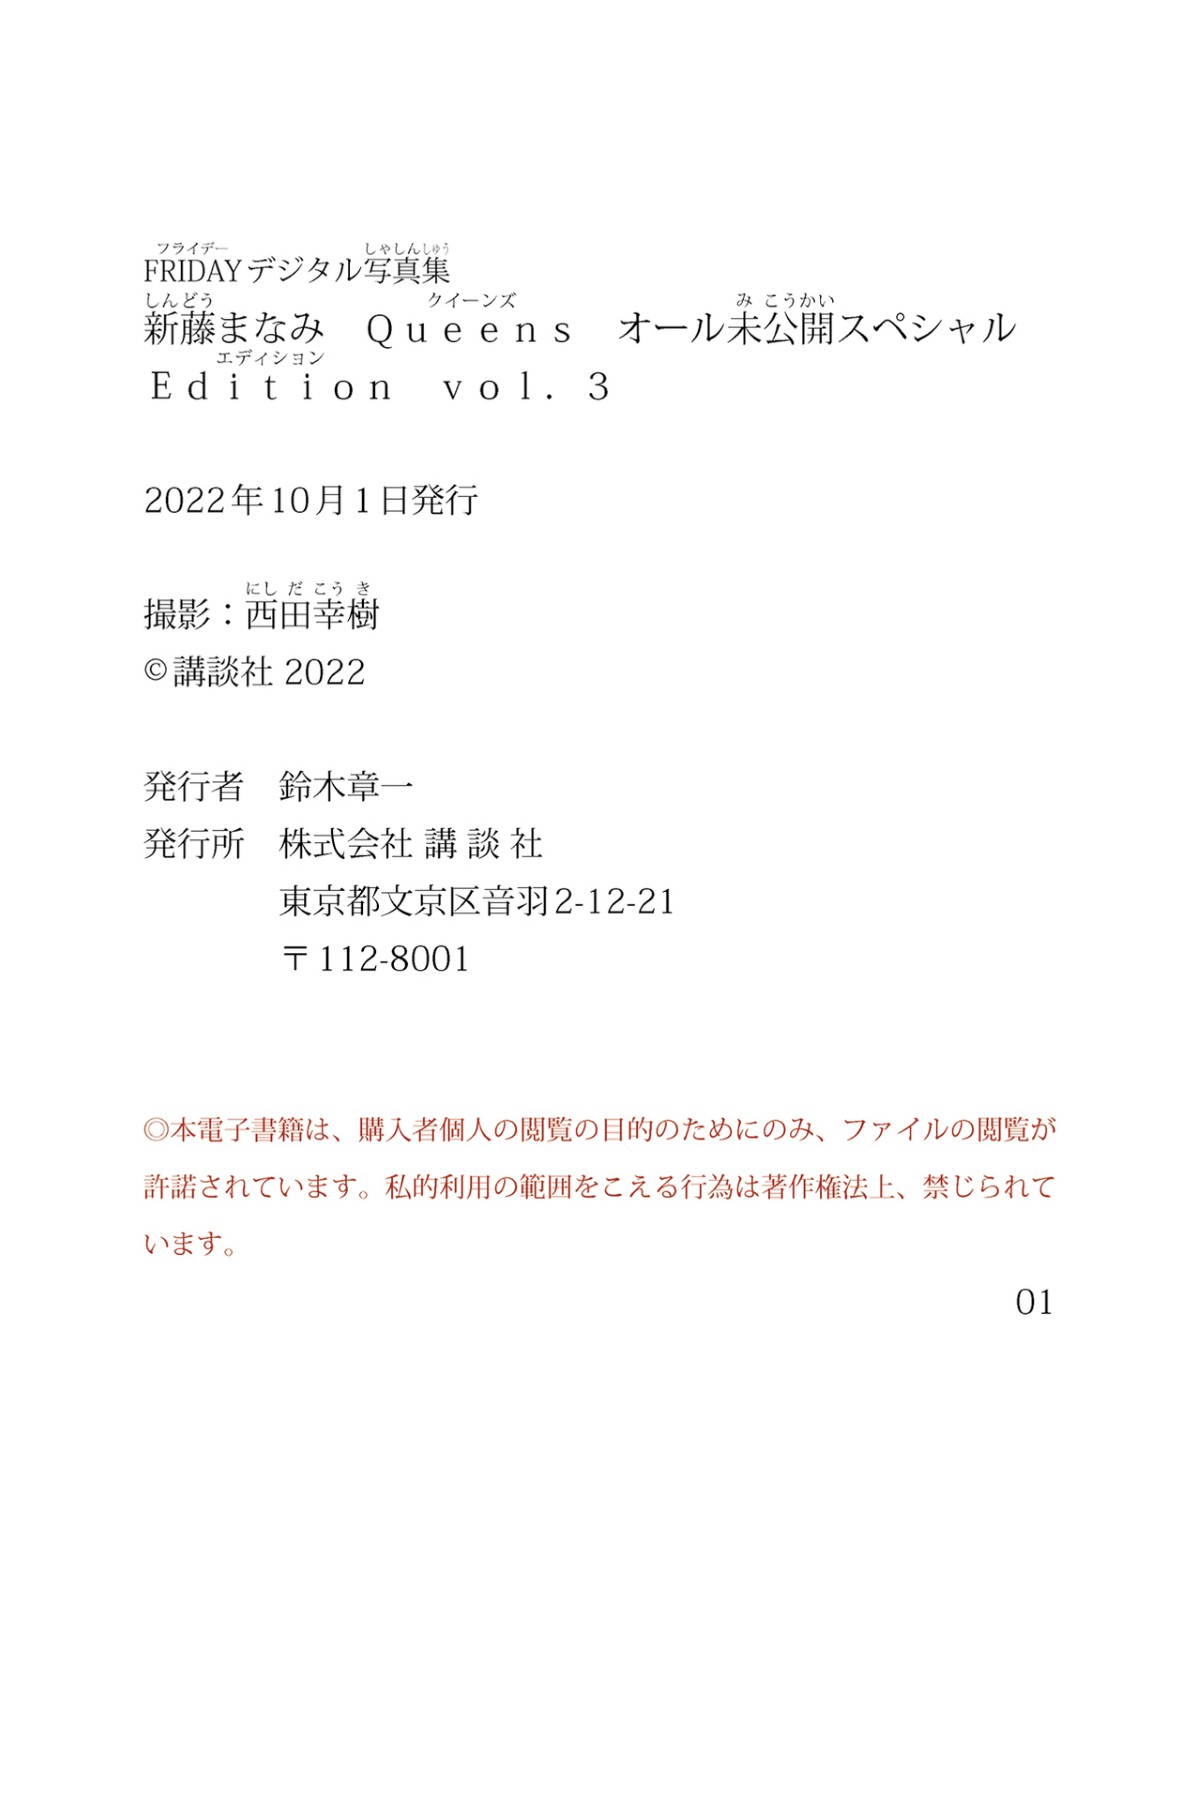 Photobook 2022 09 30 Manami Shindo 新藤まなみ Queens All Unreleased Special Edition Vol 003 0058 8174381367.jpg